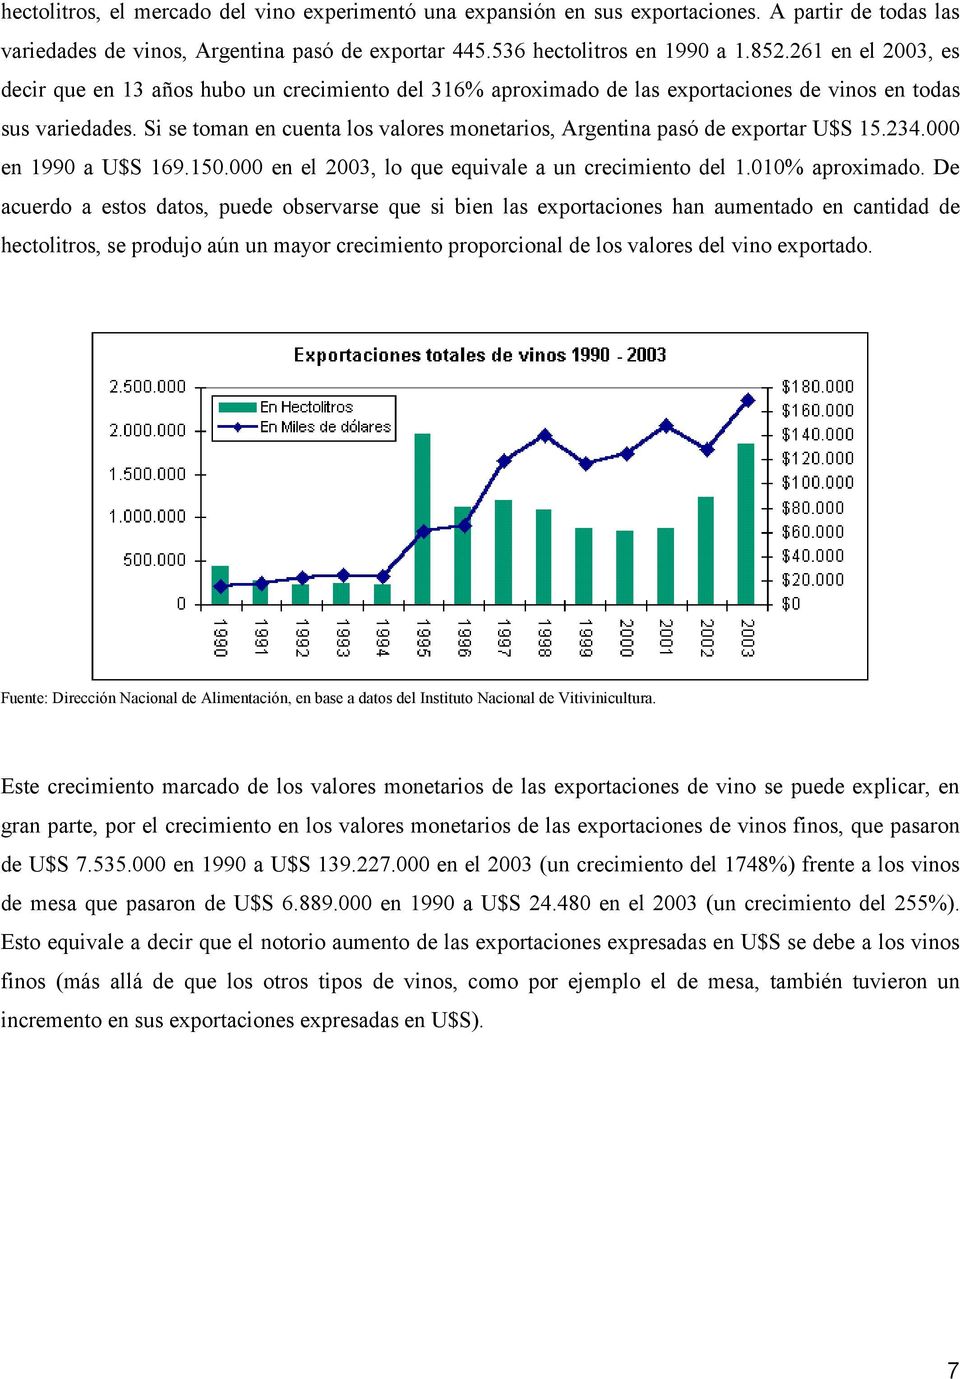 Si se toman en cuenta los valores monetarios, Argentina pasó de exportar U$S 15.234.000 en 1990 a U$S 169.150.000 en el 2003, lo que equivale a un crecimiento del 1.010% aproximado.